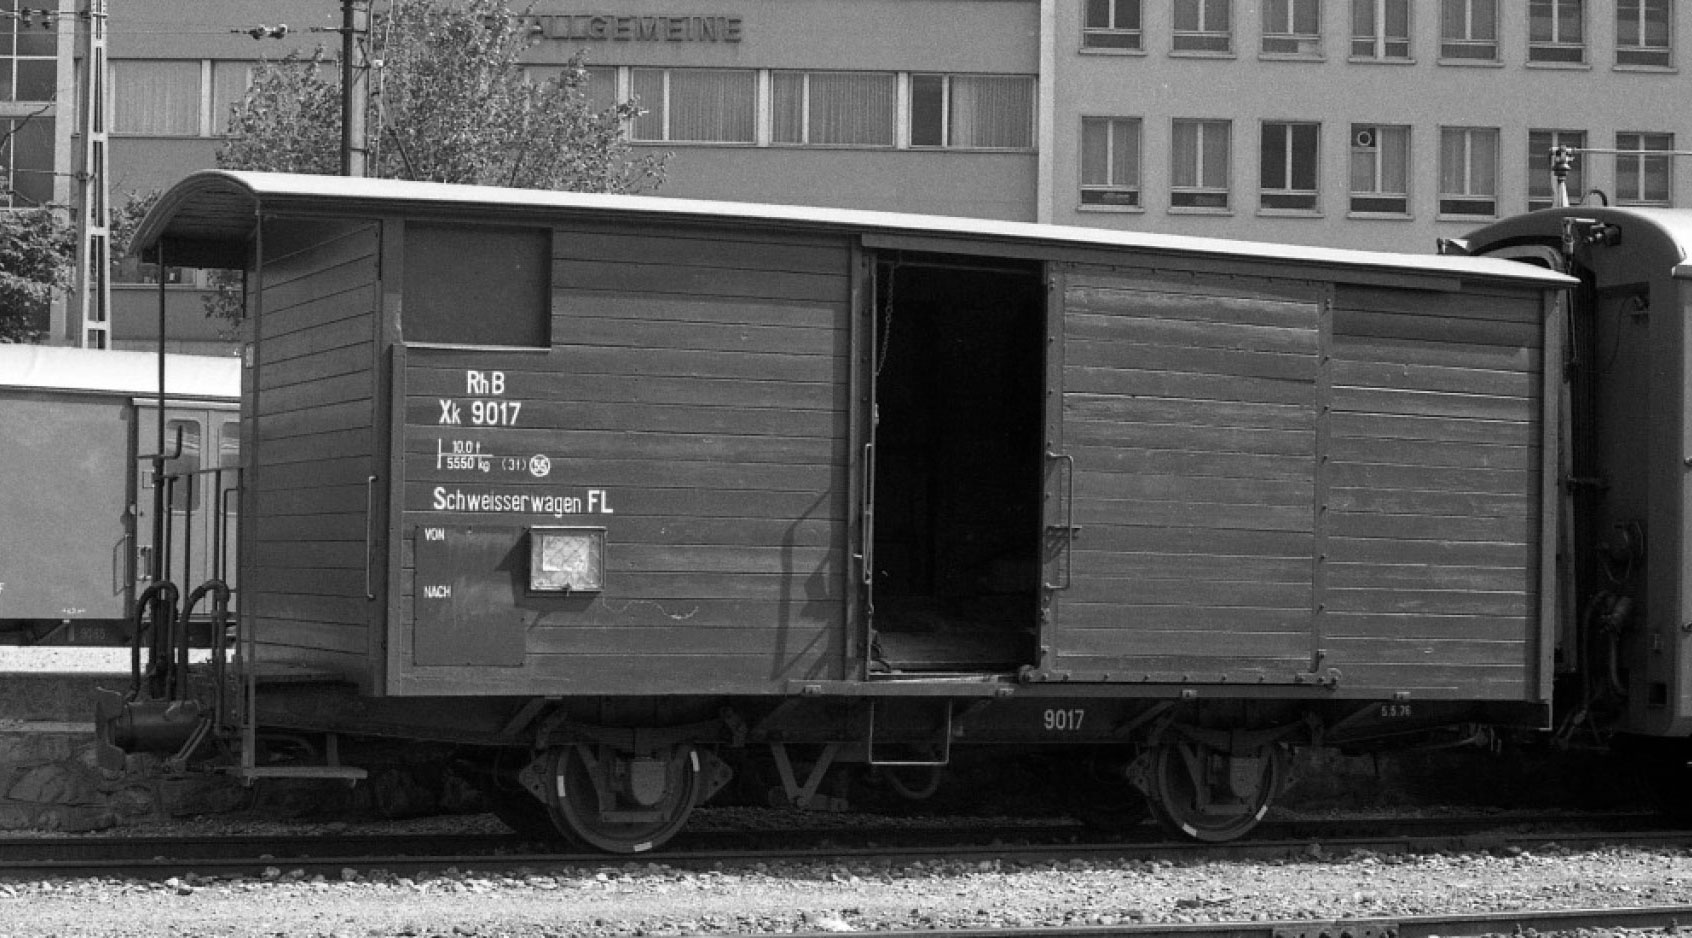 RhB Xk9017 gedeckt GüterWagen braun, Schweisserwagen FL im Zustand der 1980iger Jahre